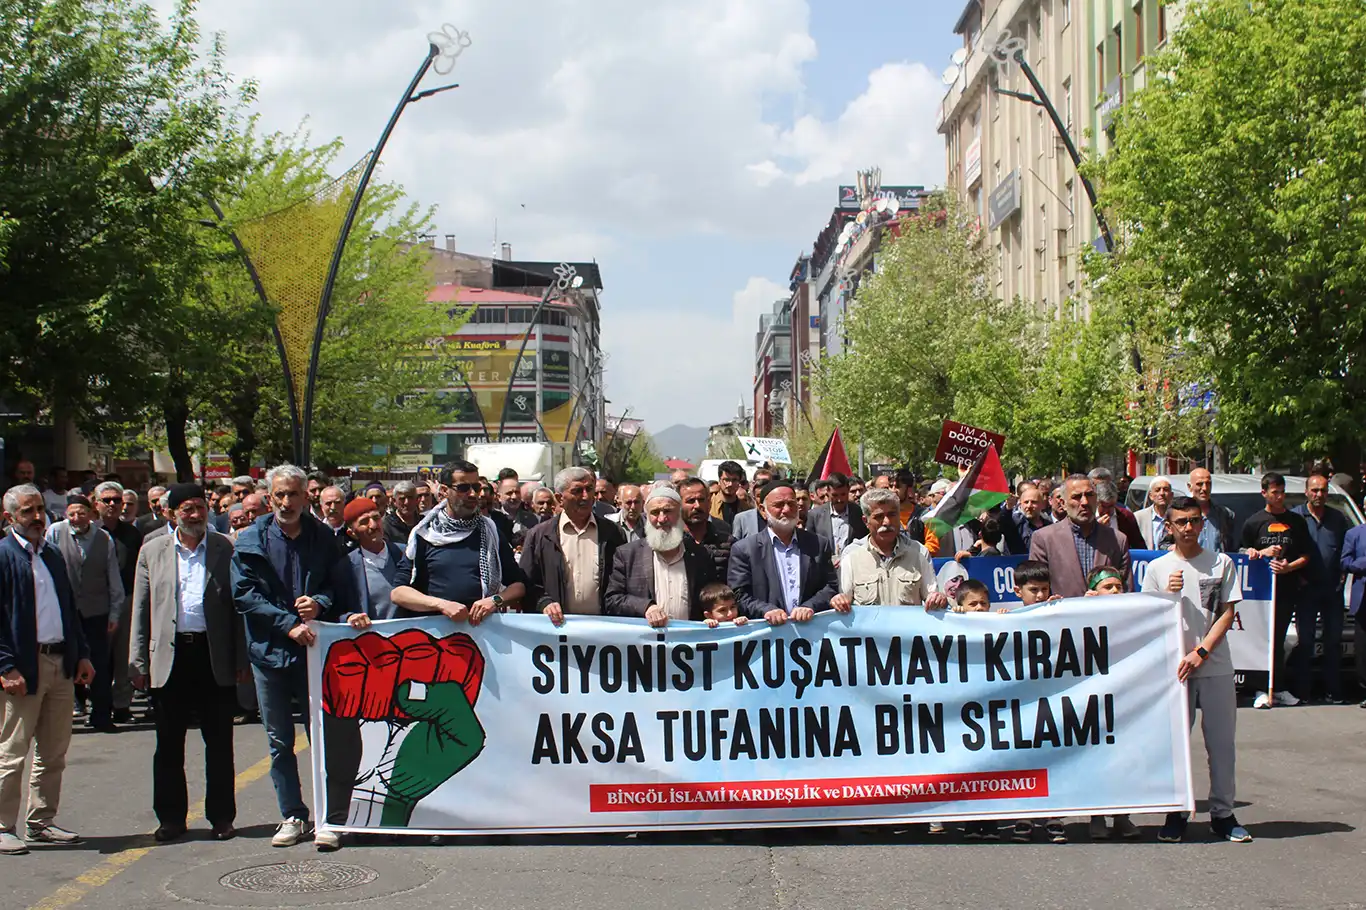 Bingöl İslami Kardeşlik ve Dayanışma Platformu:  Aksa Tufanı, İslam coğrafyasının özgürlük mücadelesidir